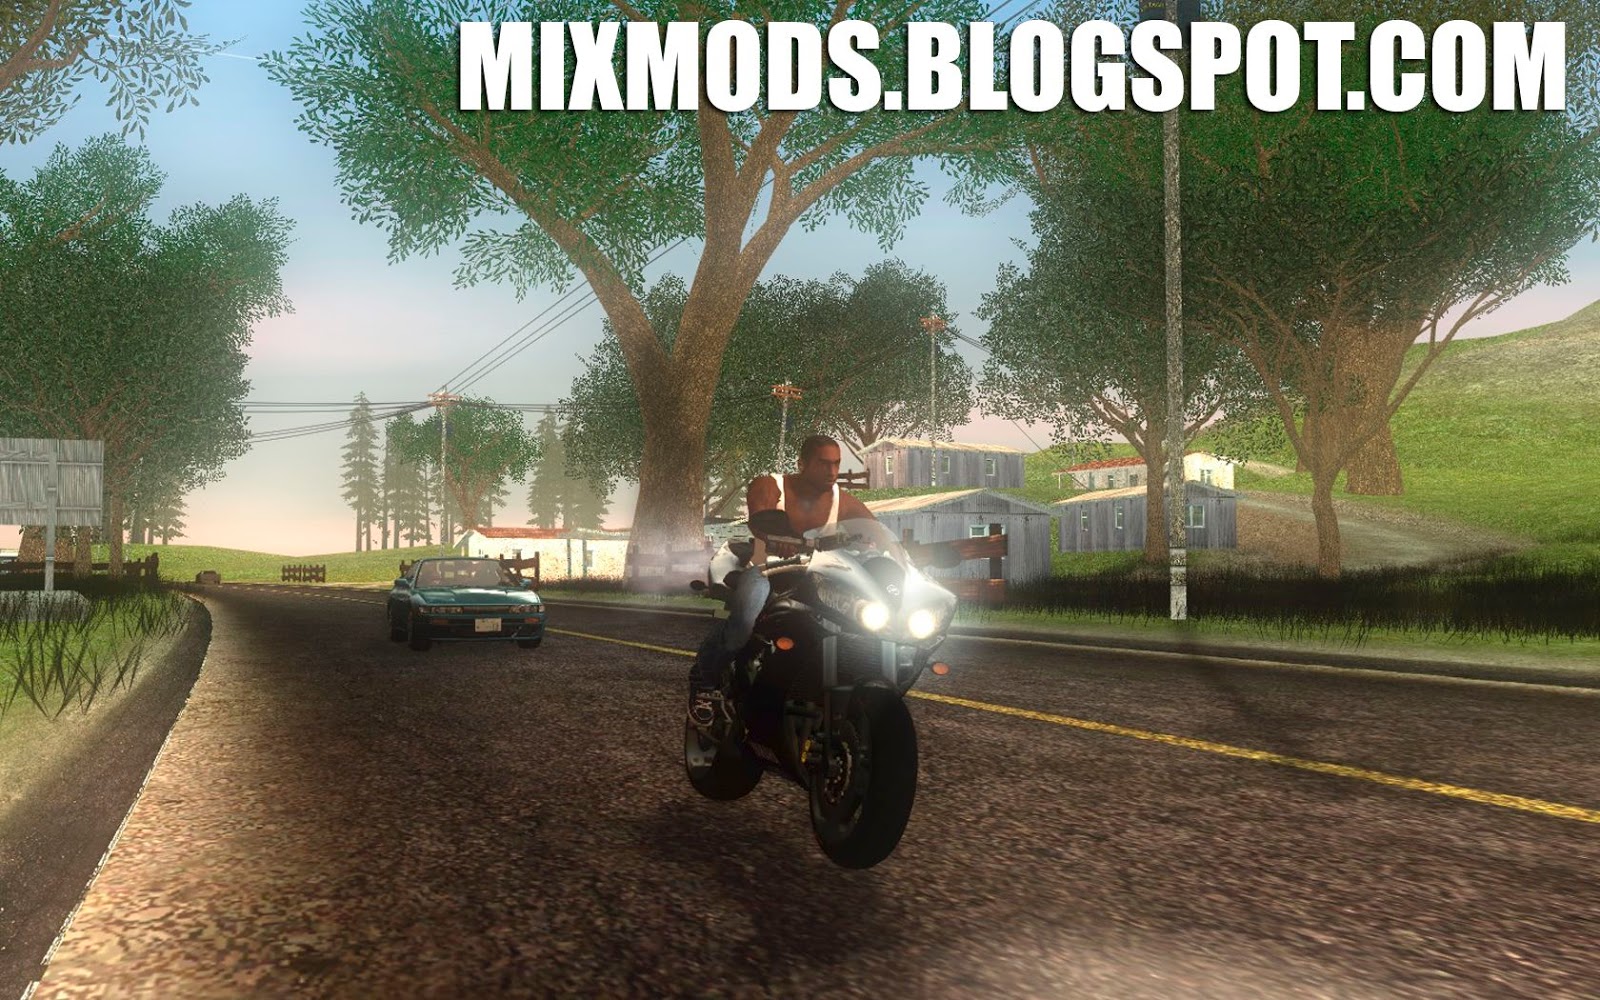 Farol da moto sempre ligado - MixMods